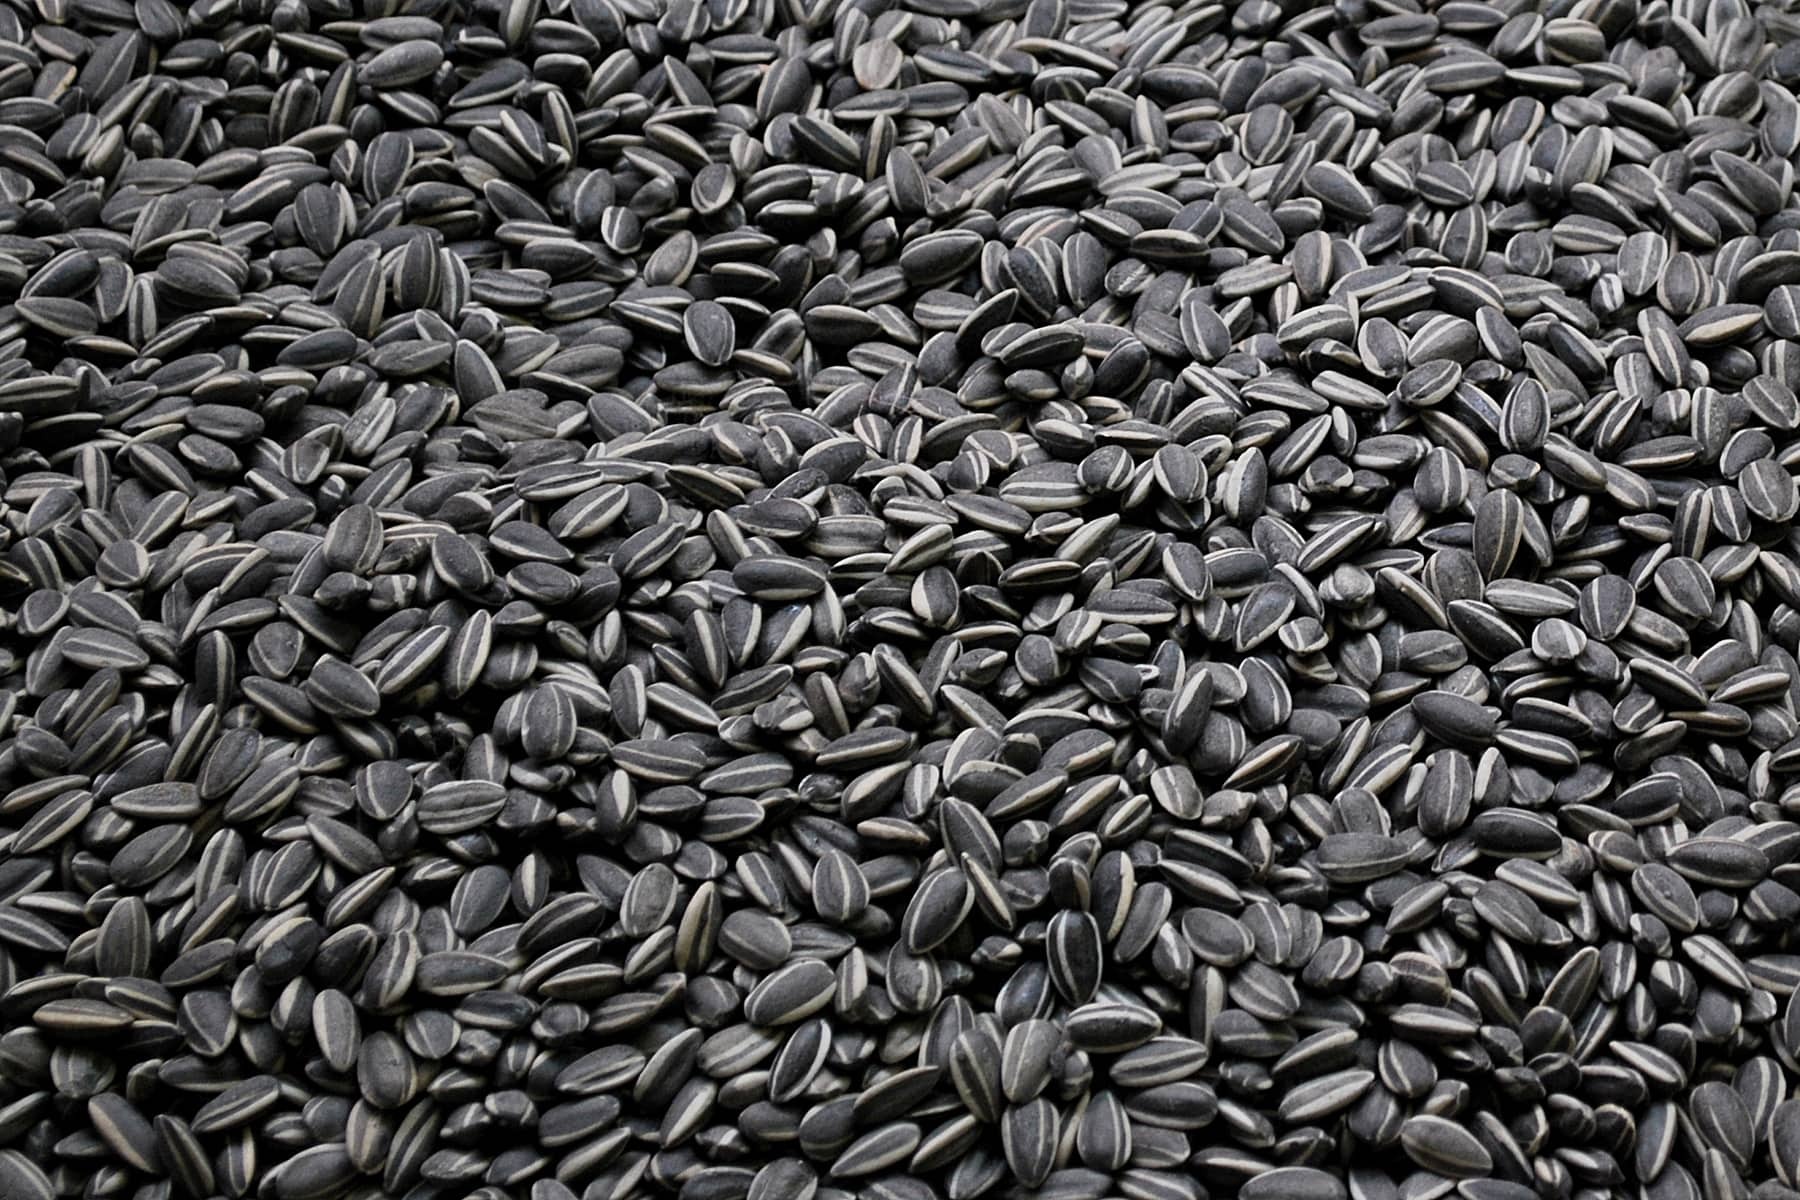 Семена оптом на развес купить семена афганку